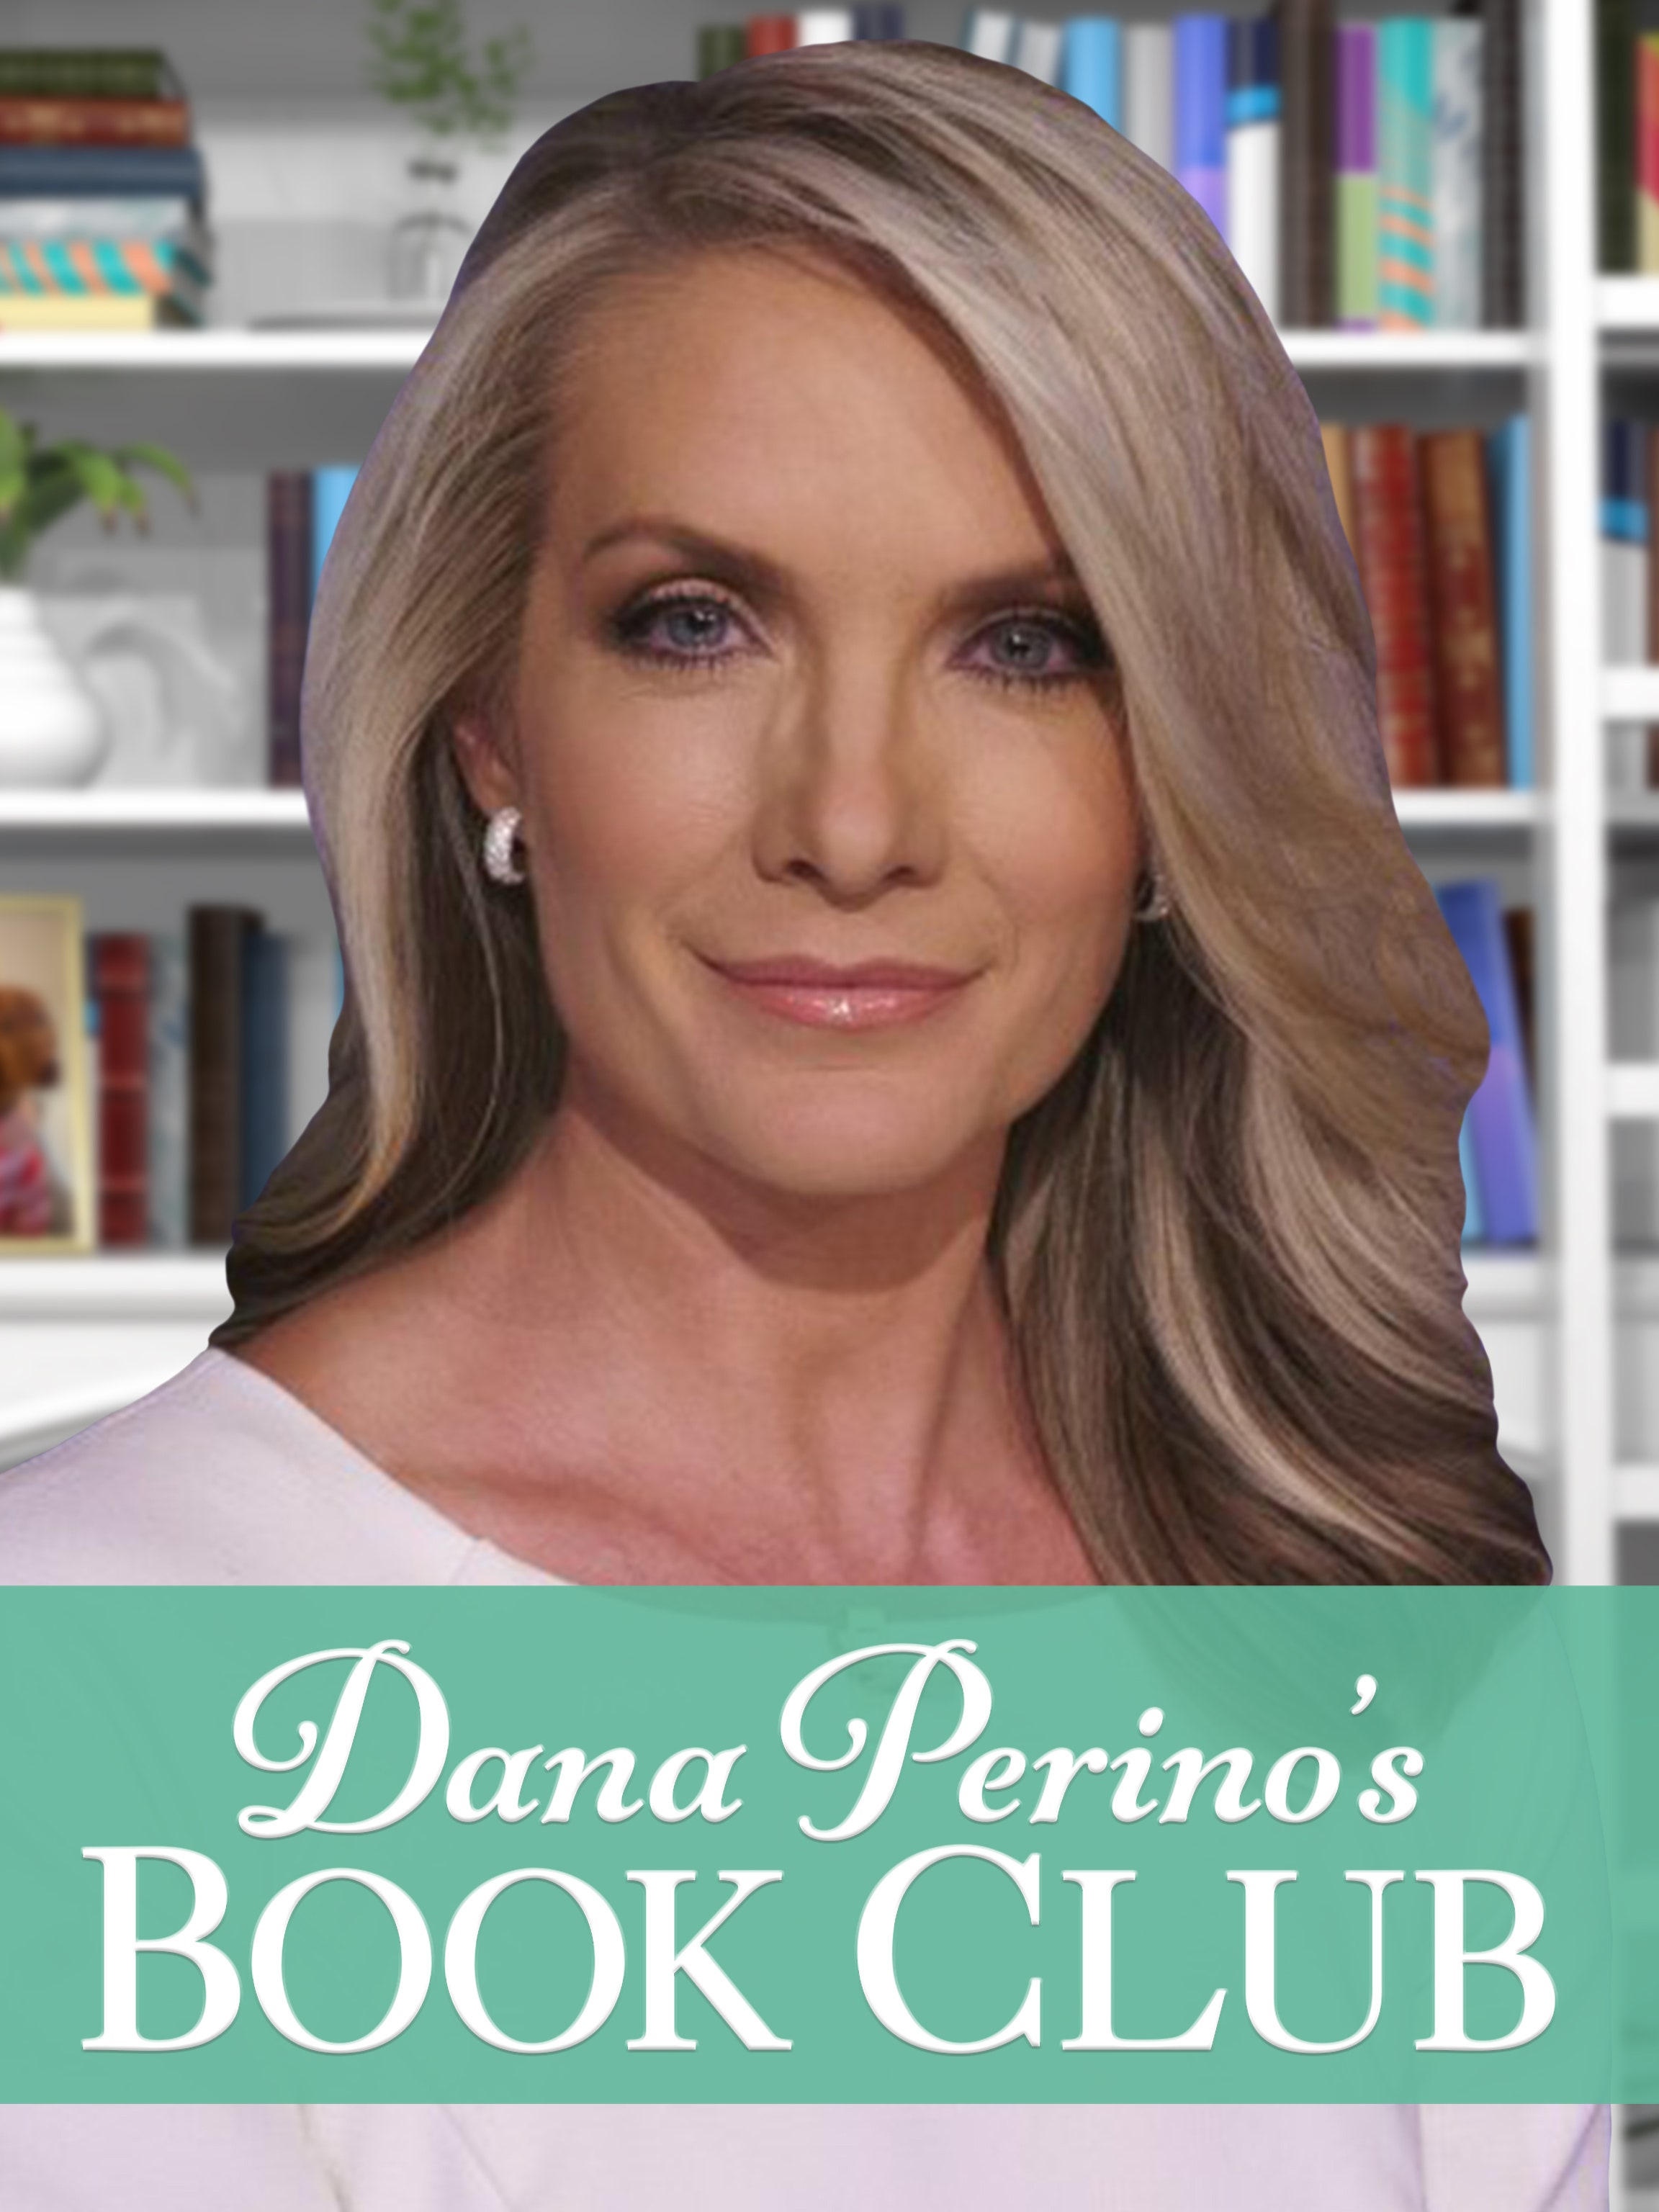 Dana Perino's Book Club dcg-mark-poster